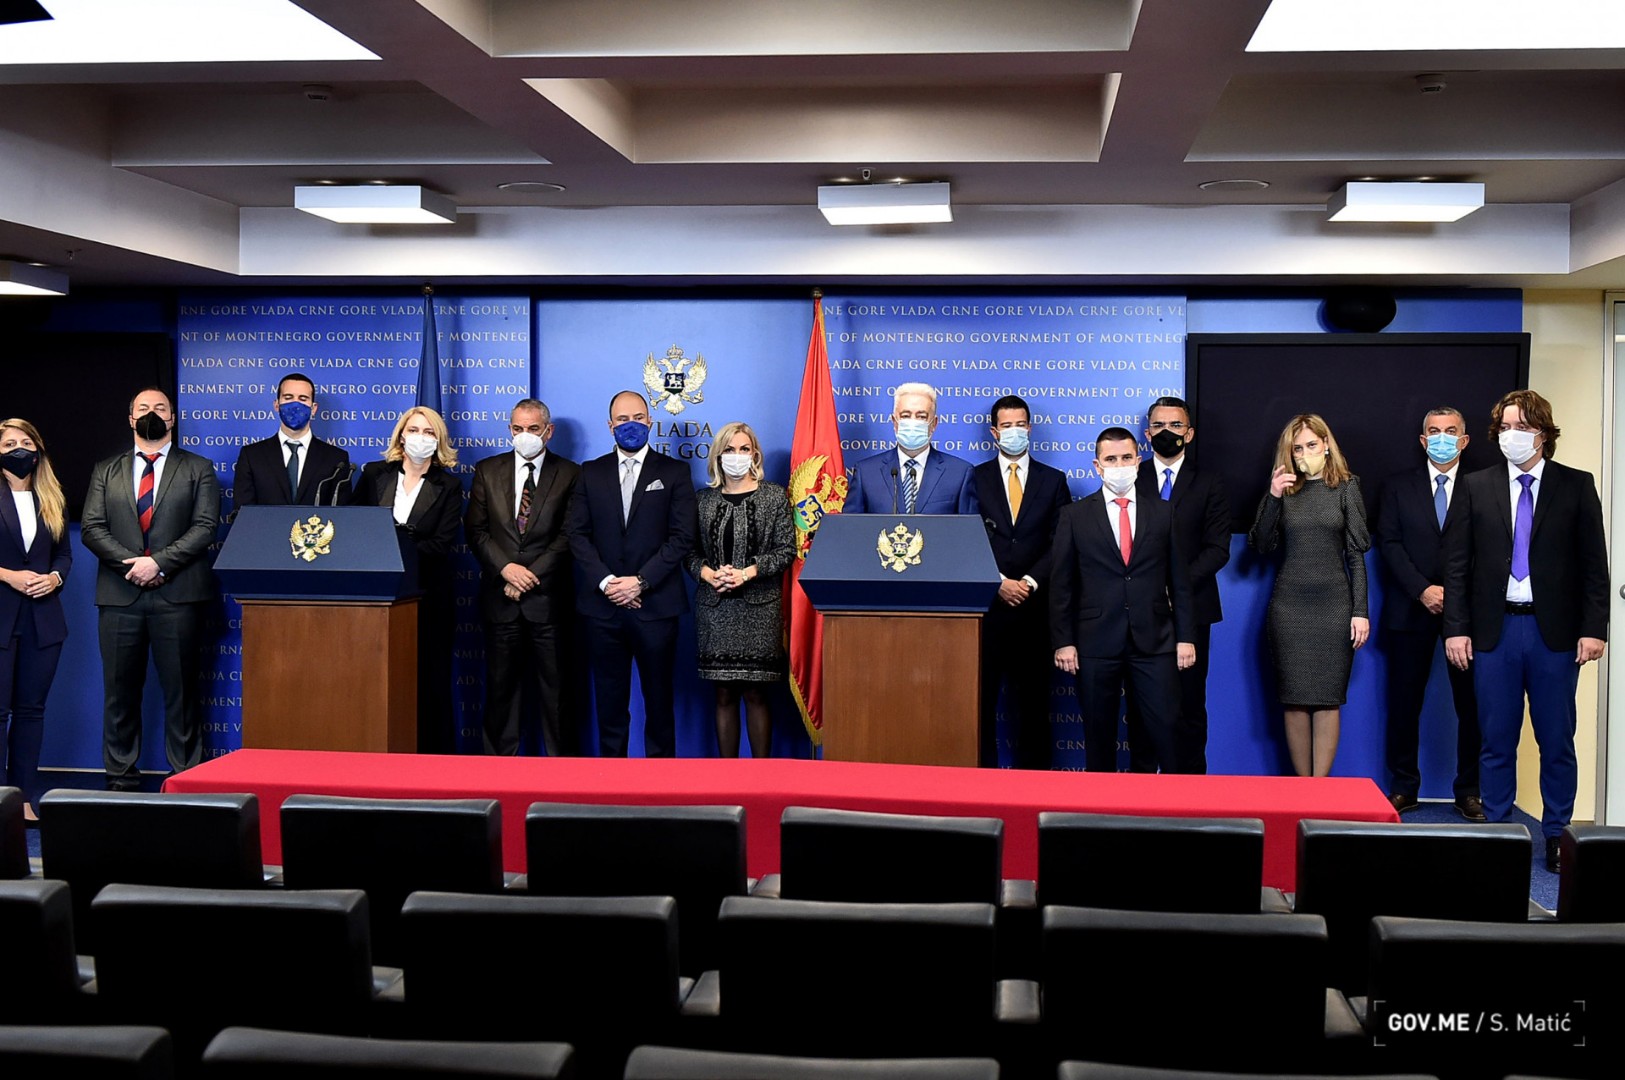 Nova Vlada Crne Gore uz riječ Kosovo stavila - fusnotu